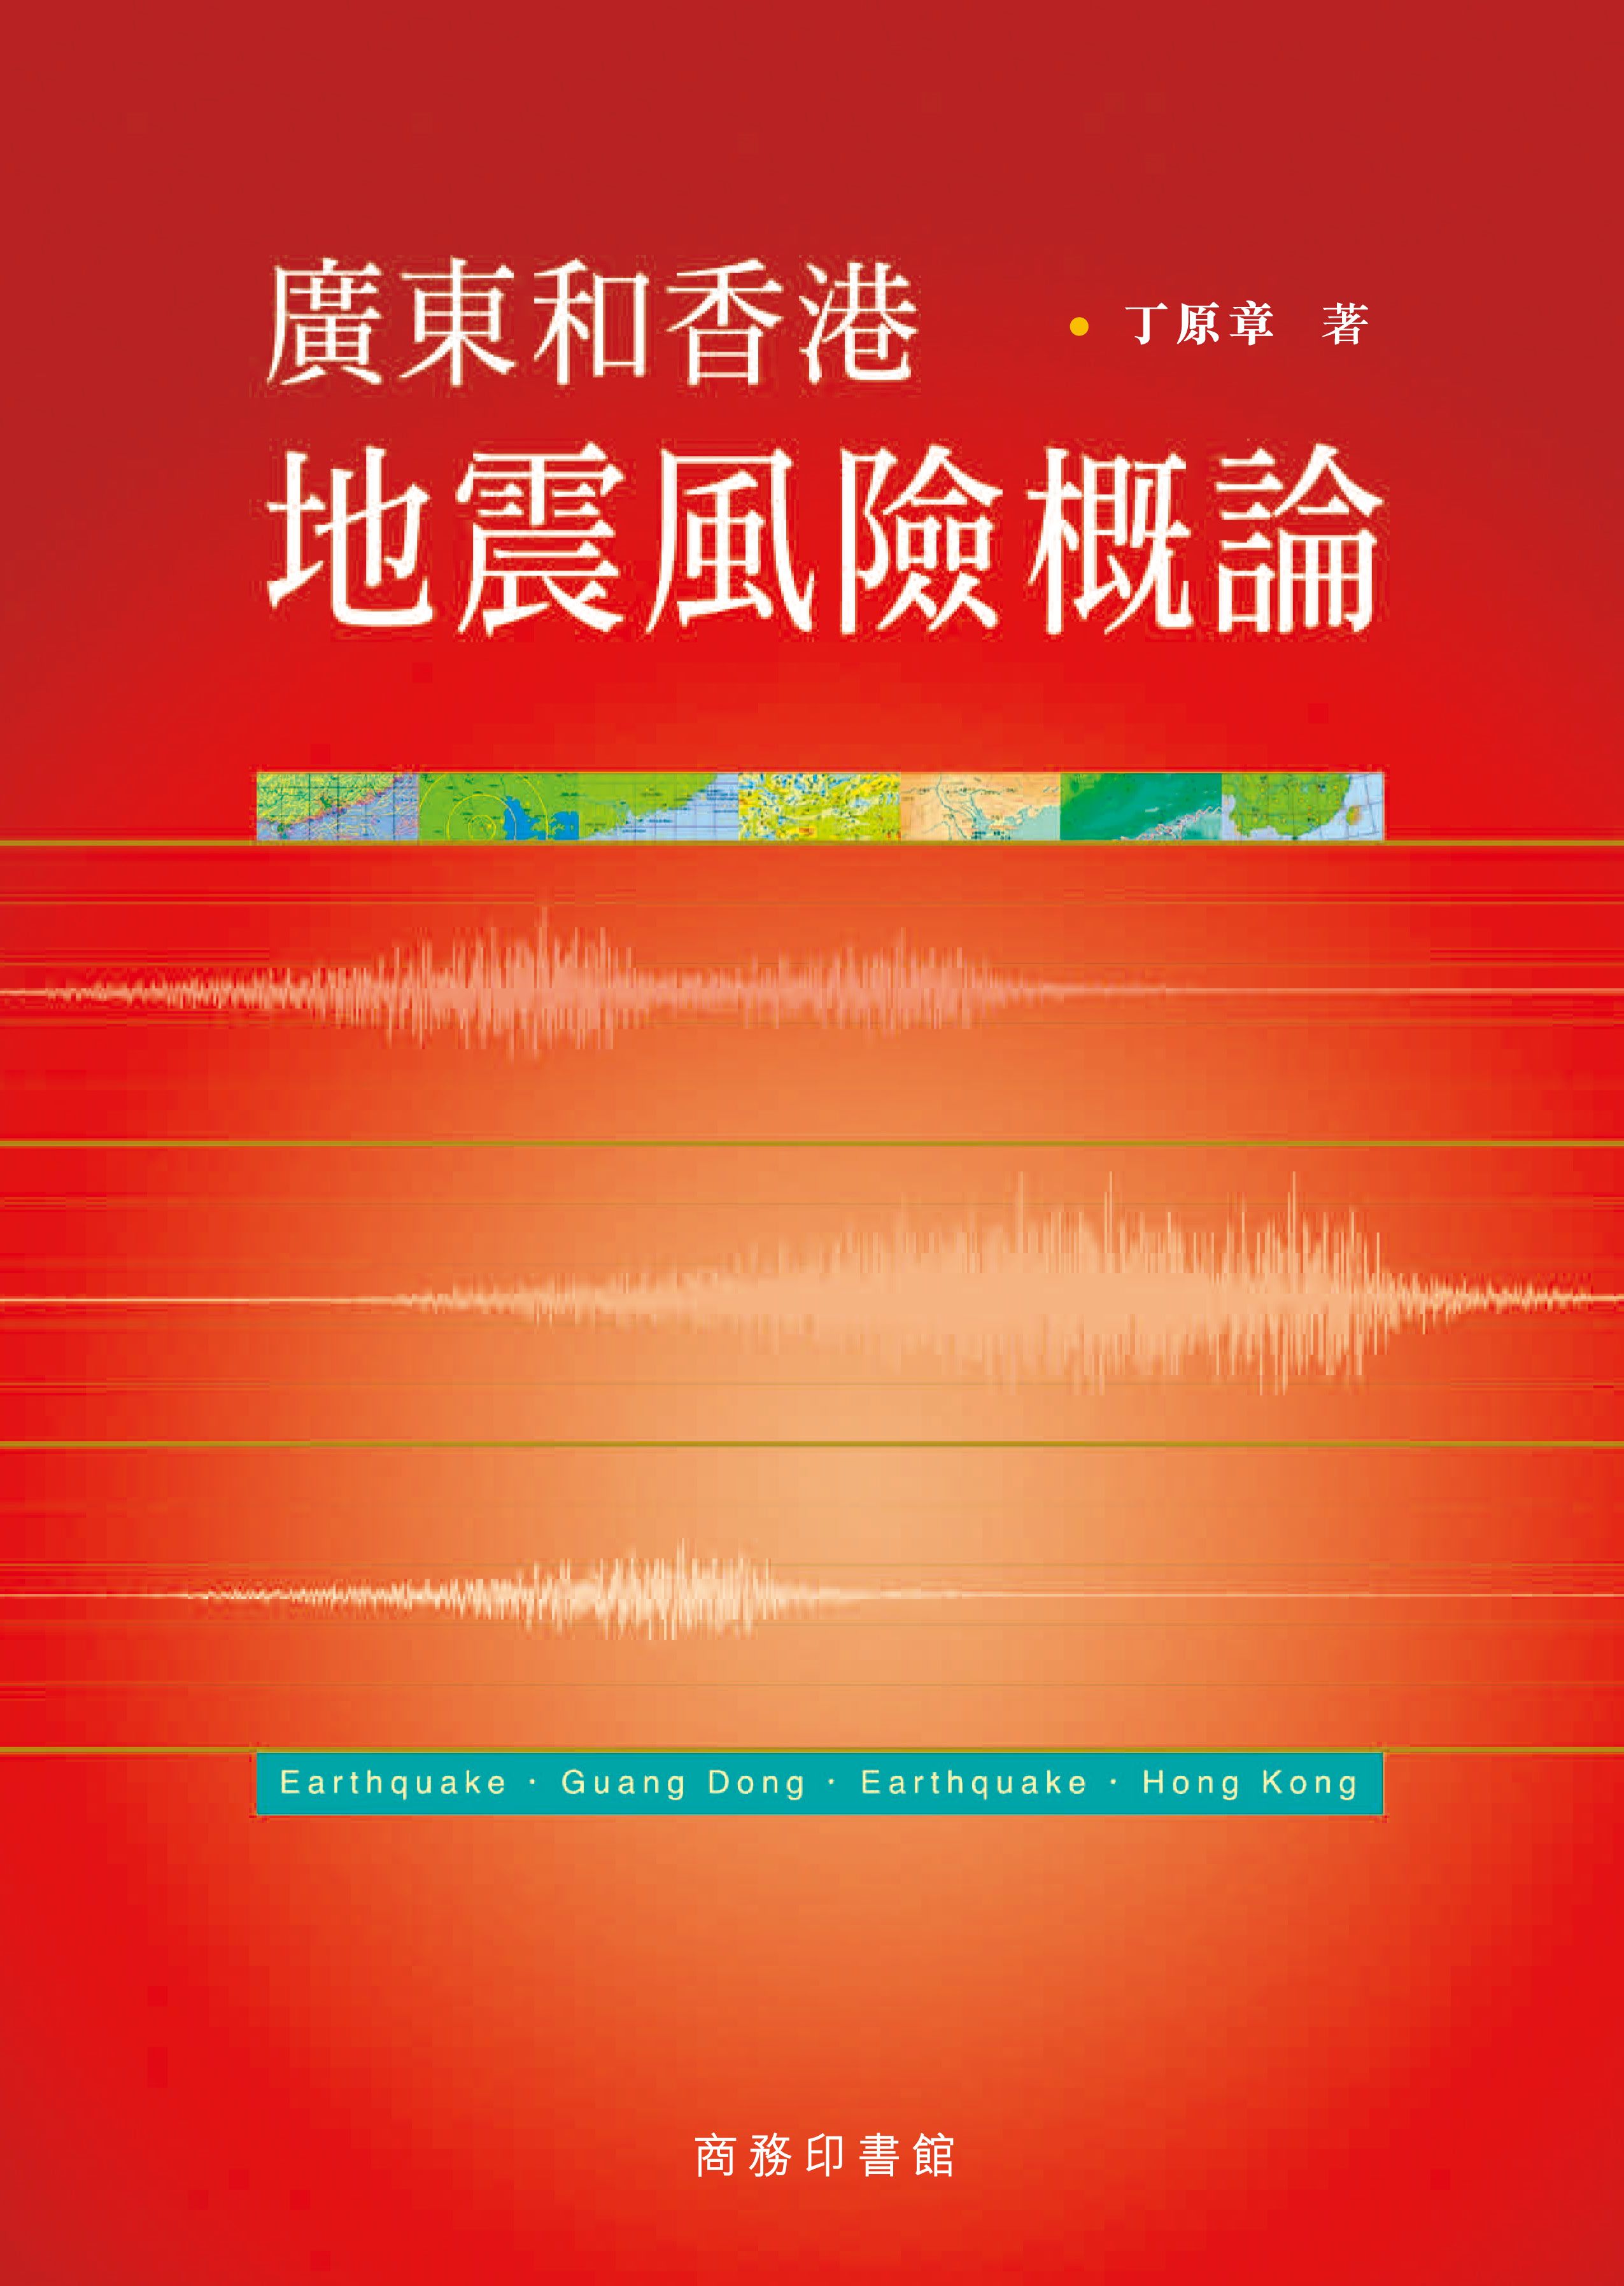 廣東和香港地震風險概論